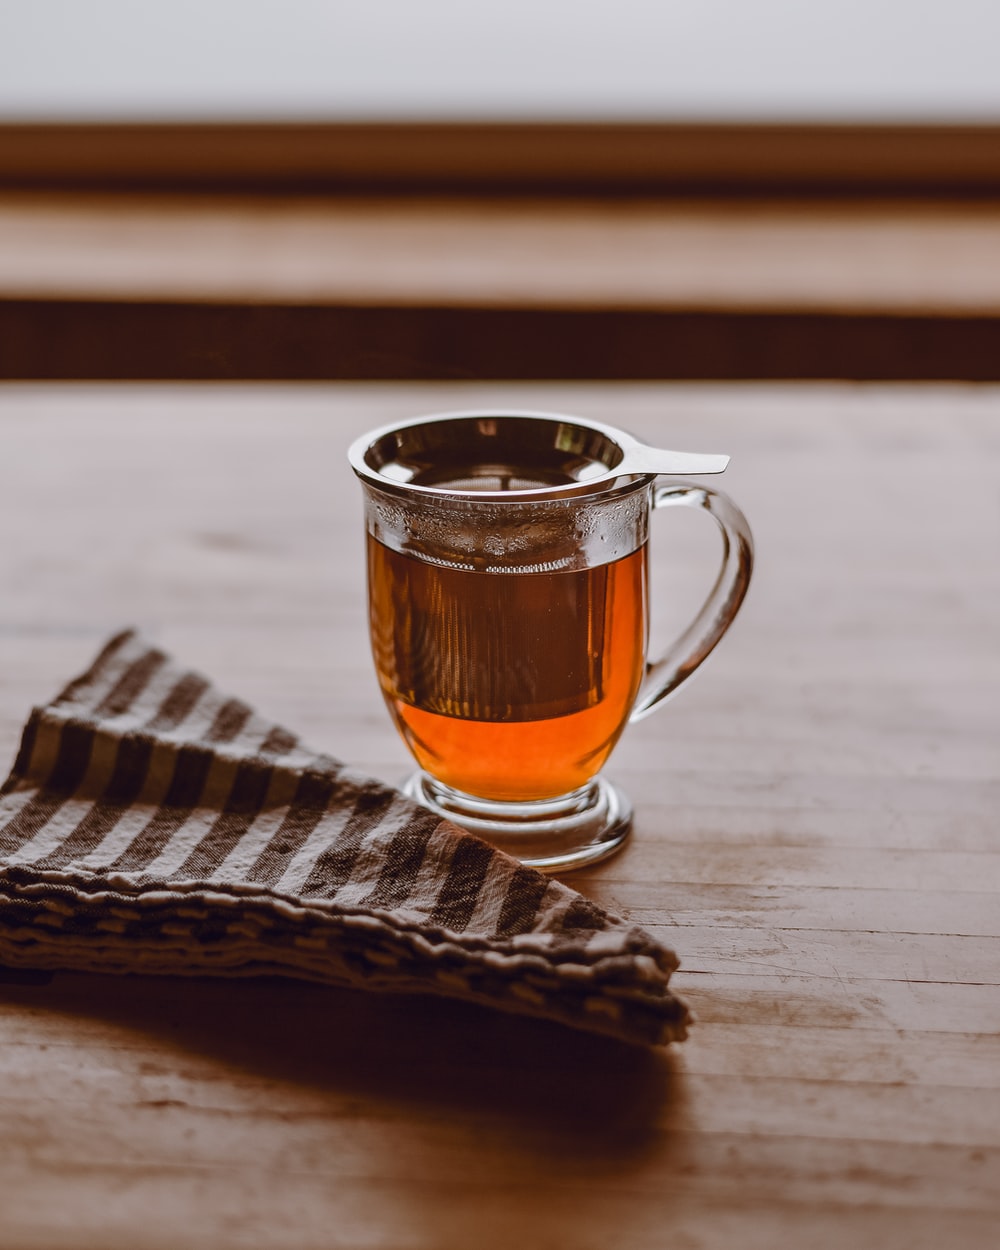 Lợi ích của trà trắng đối với sức khỏe của con người